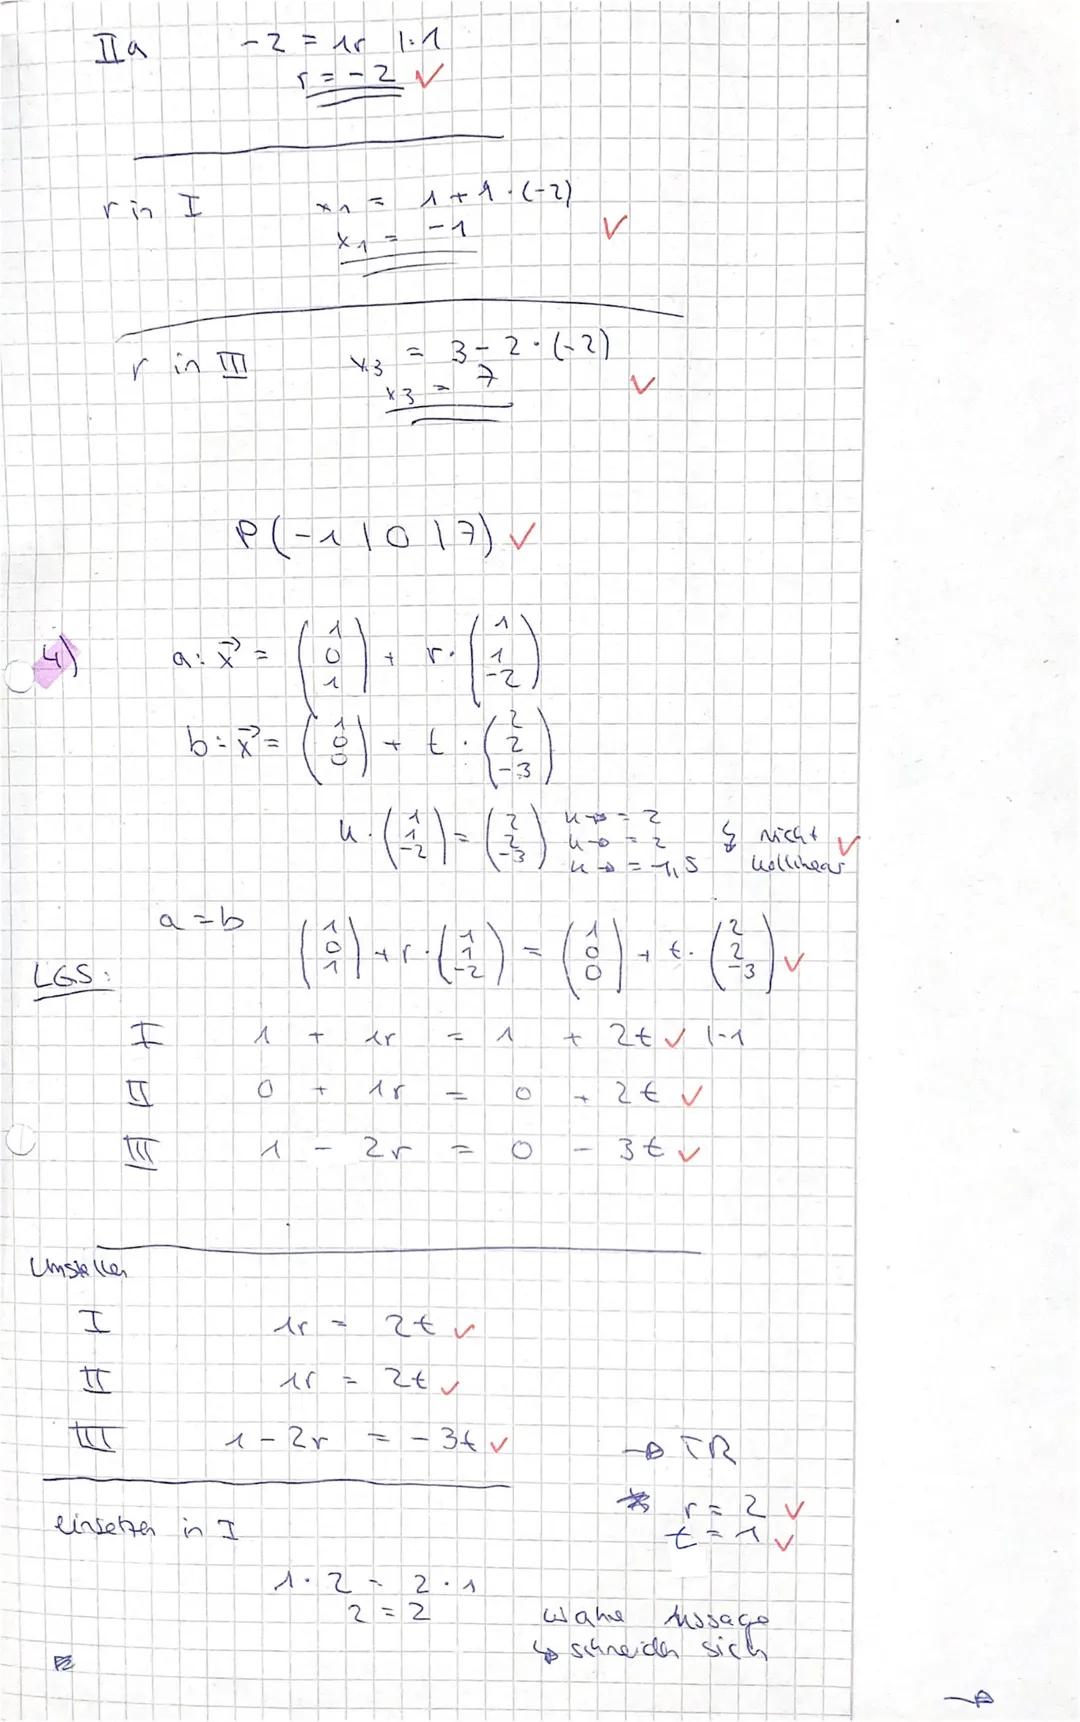 GK Mathematik
Achten Sie auf nachvollziehbare Rechenwege!
1. Gegeben ist das Dreieck ABC mit den Eckpunkten A(4 | 5 | 3), B(-1|3|-4) und C(3